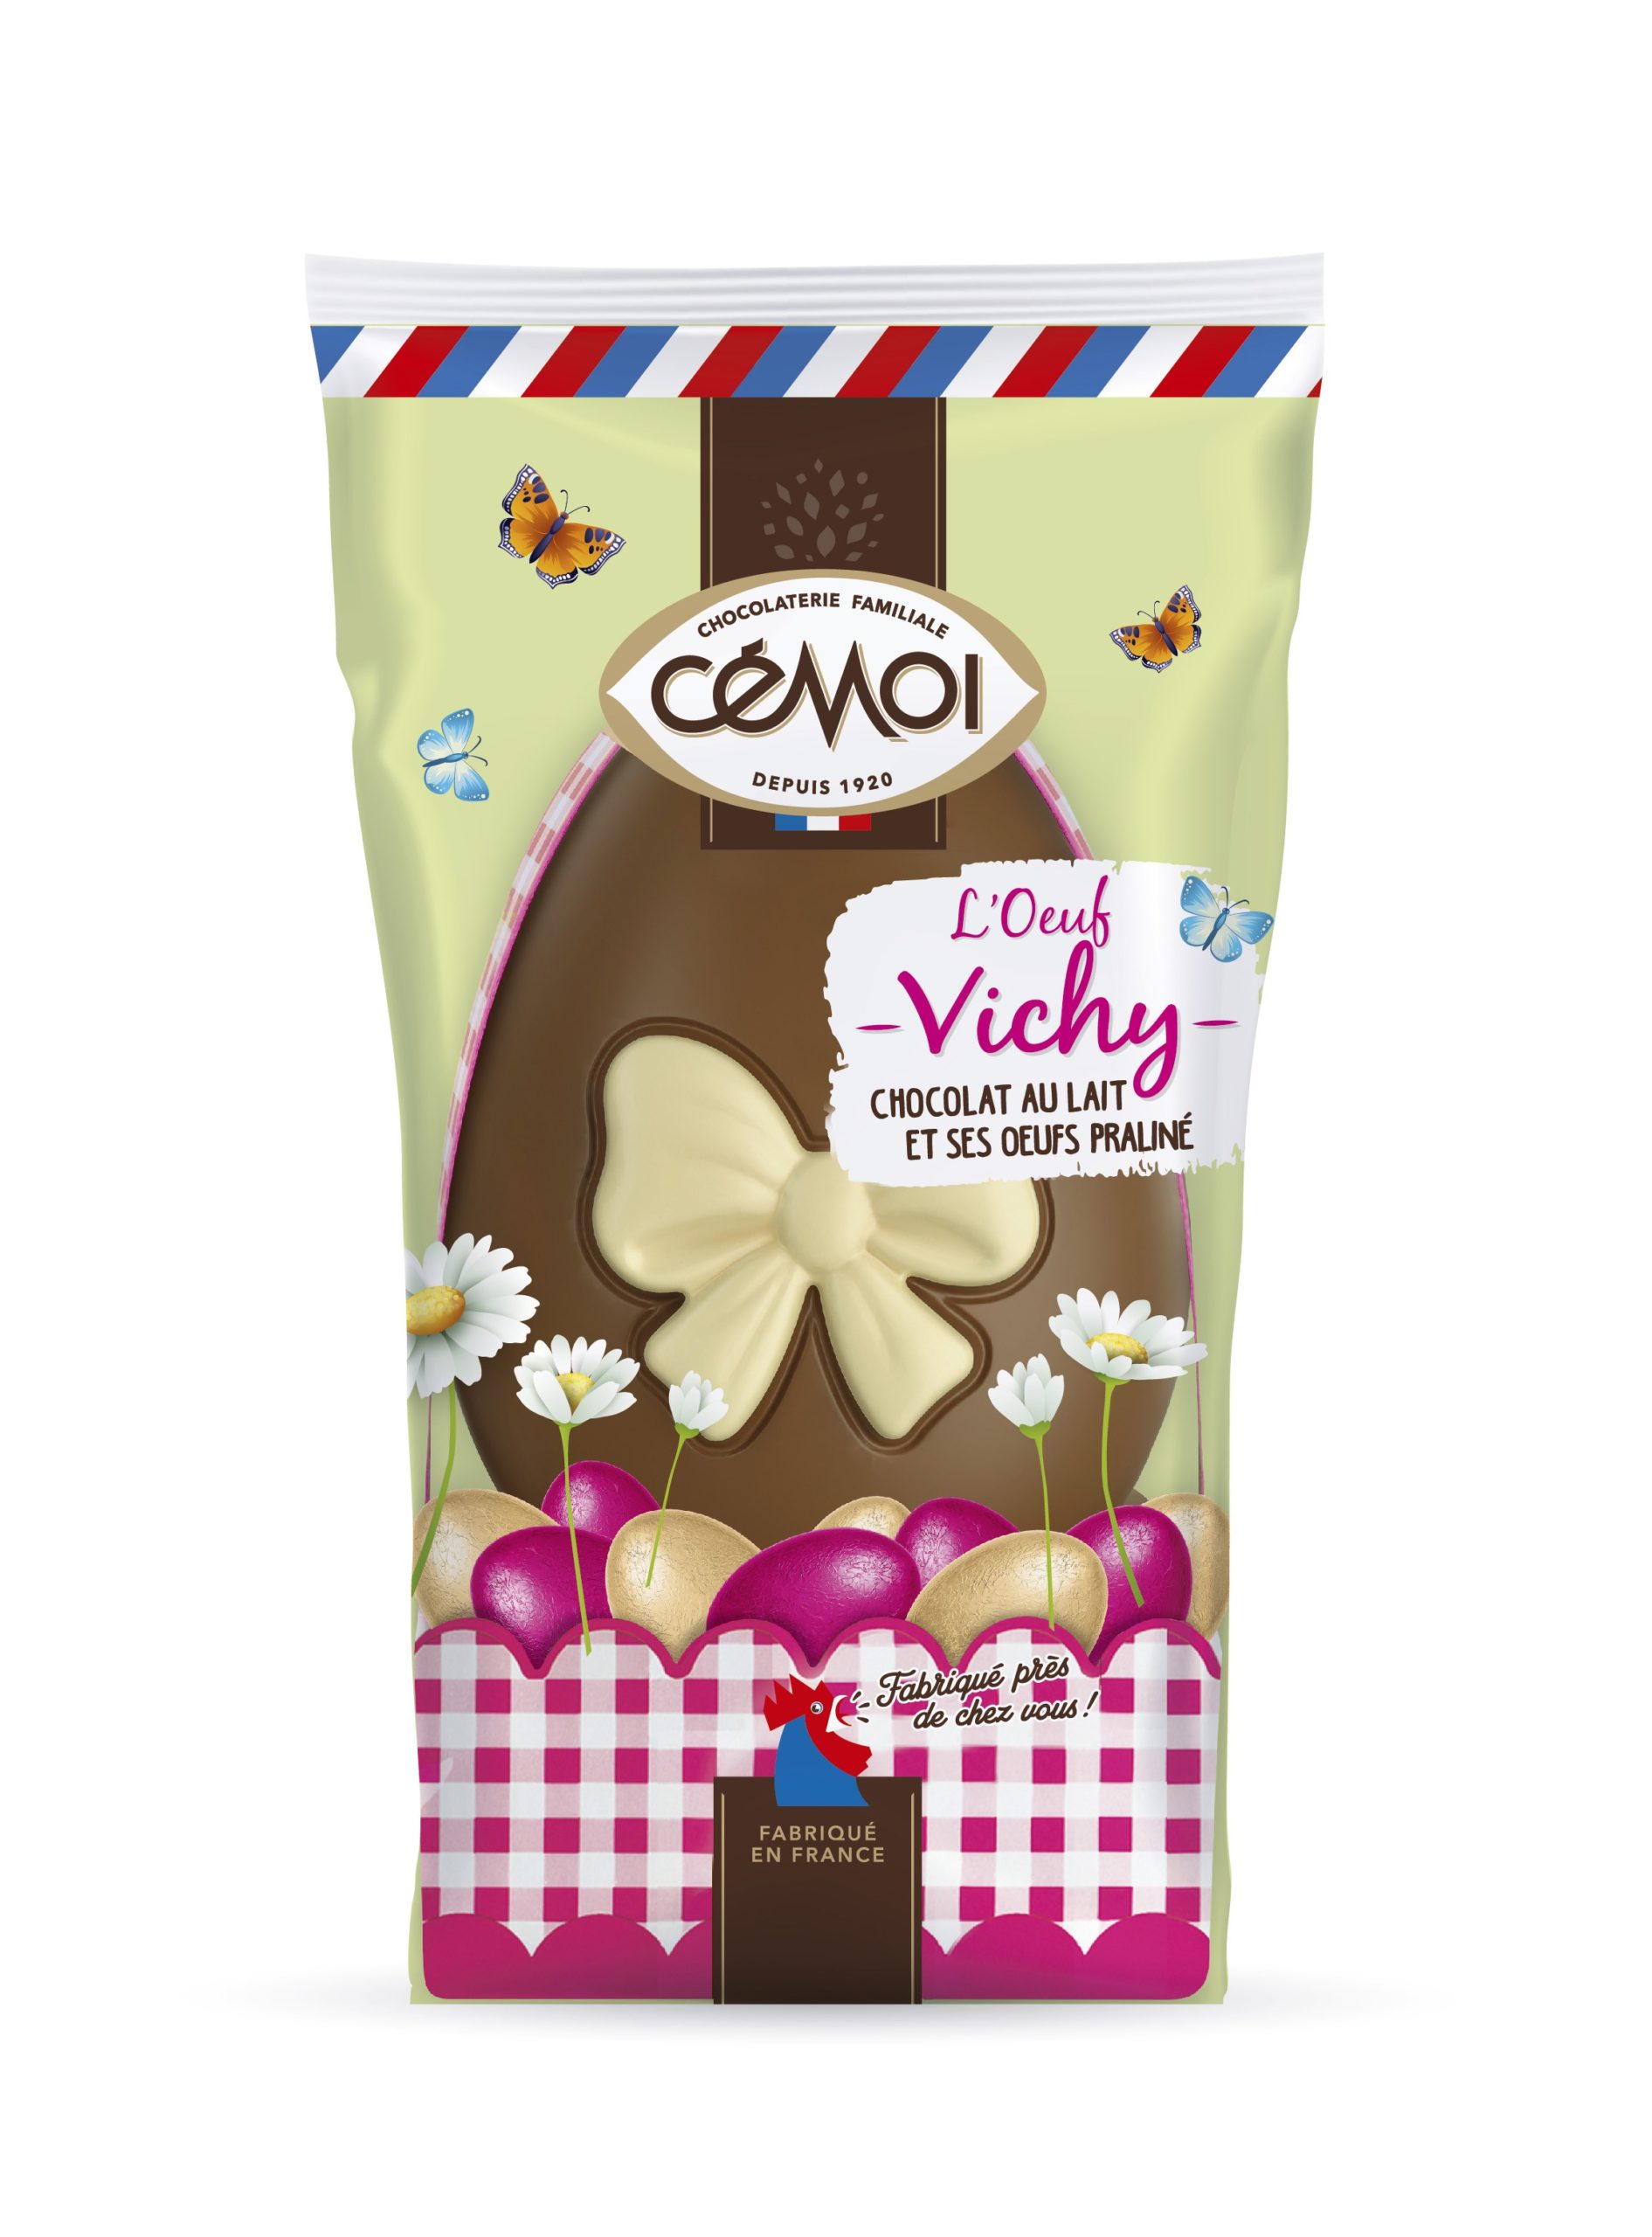 L'oeuf Vichy au chocolat au lait et ses œufs confiseur, 154g